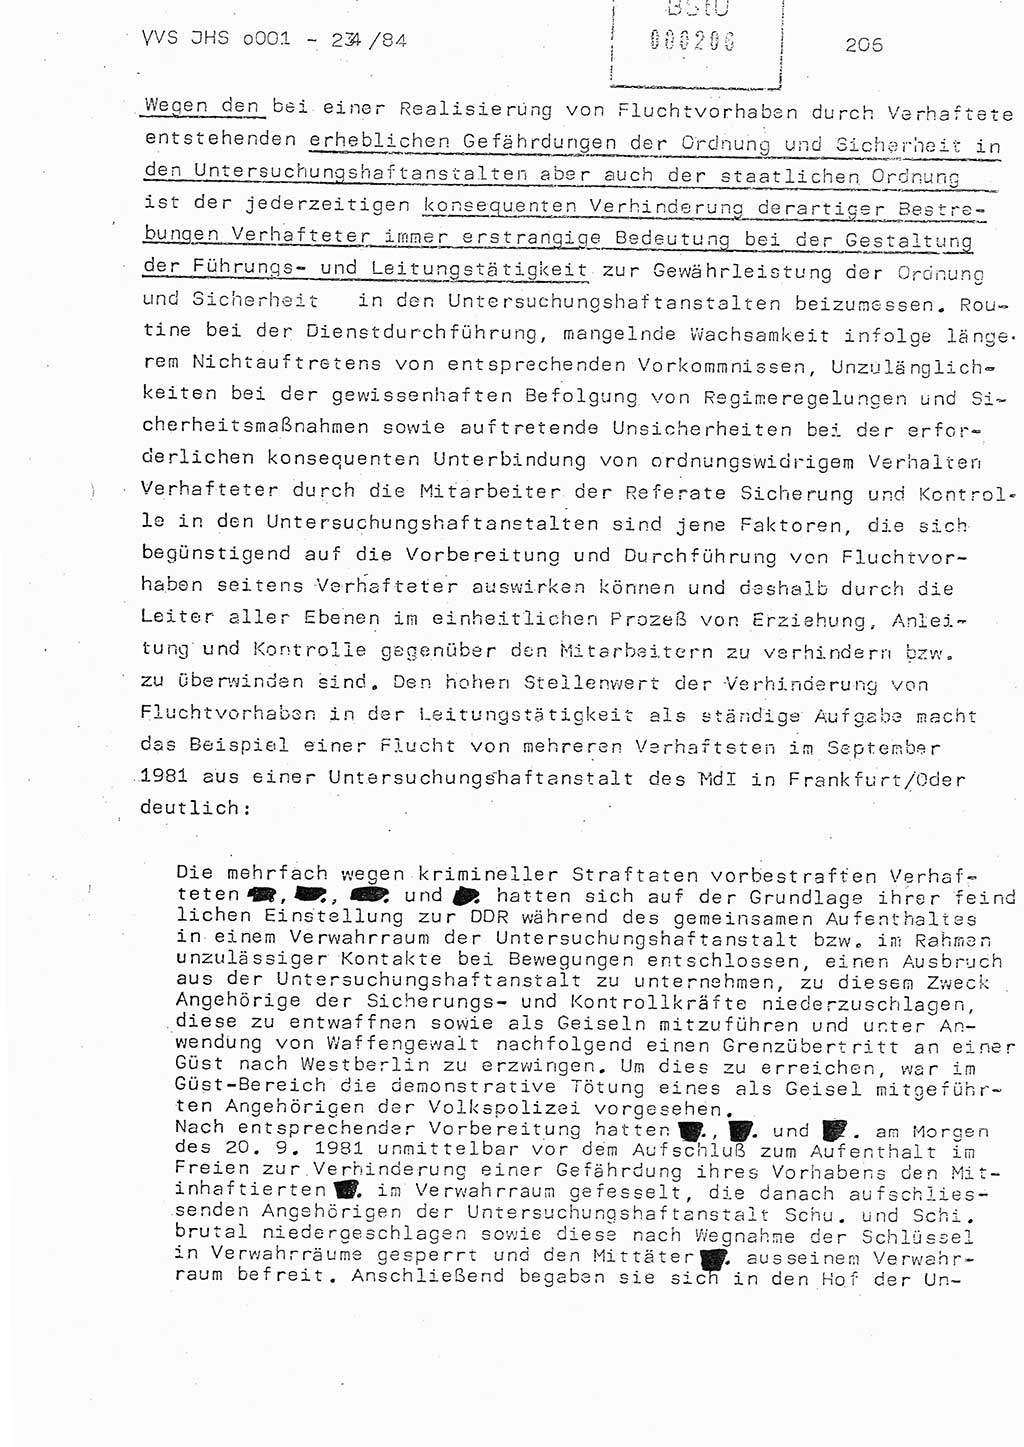 Dissertation Oberst Siegfried Rataizick (Abt. ⅩⅣ), Oberstleutnant Volkmar Heinz (Abt. ⅩⅣ), Oberstleutnant Werner Stein (HA Ⅸ), Hauptmann Heinz Conrad (JHS), Ministerium für Staatssicherheit (MfS) [Deutsche Demokratische Republik (DDR)], Juristische Hochschule (JHS), Vertrauliche Verschlußsache (VVS) o001-234/84, Potsdam 1984, Seite 206 (Diss. MfS DDR JHS VVS o001-234/84 1984, S. 206)